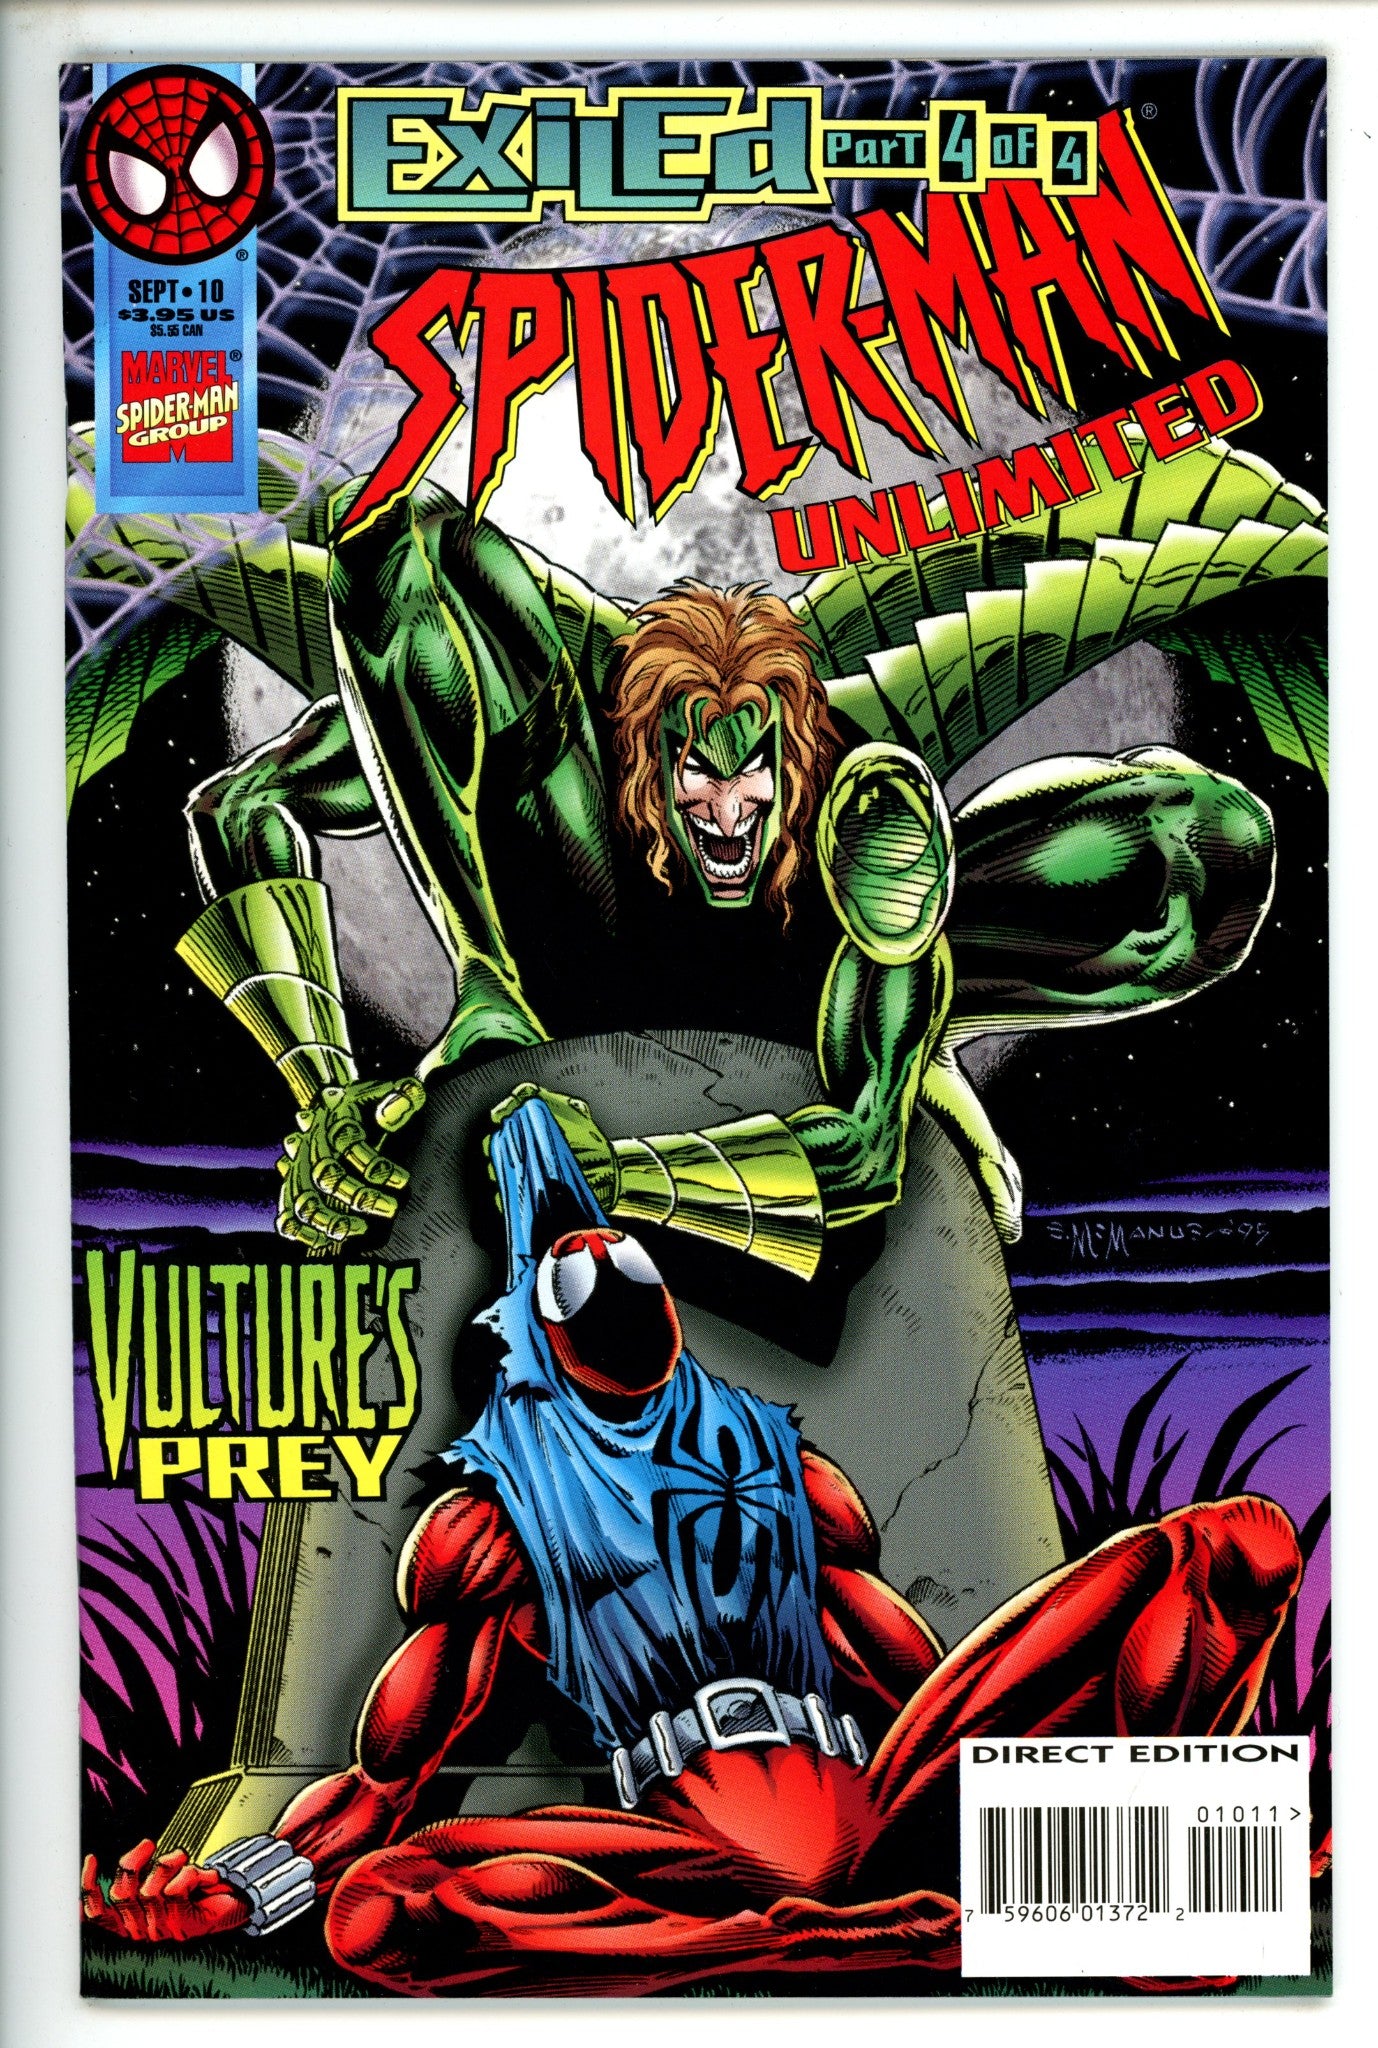 Spider-Man Unlimited Vol 1 10 (1995)